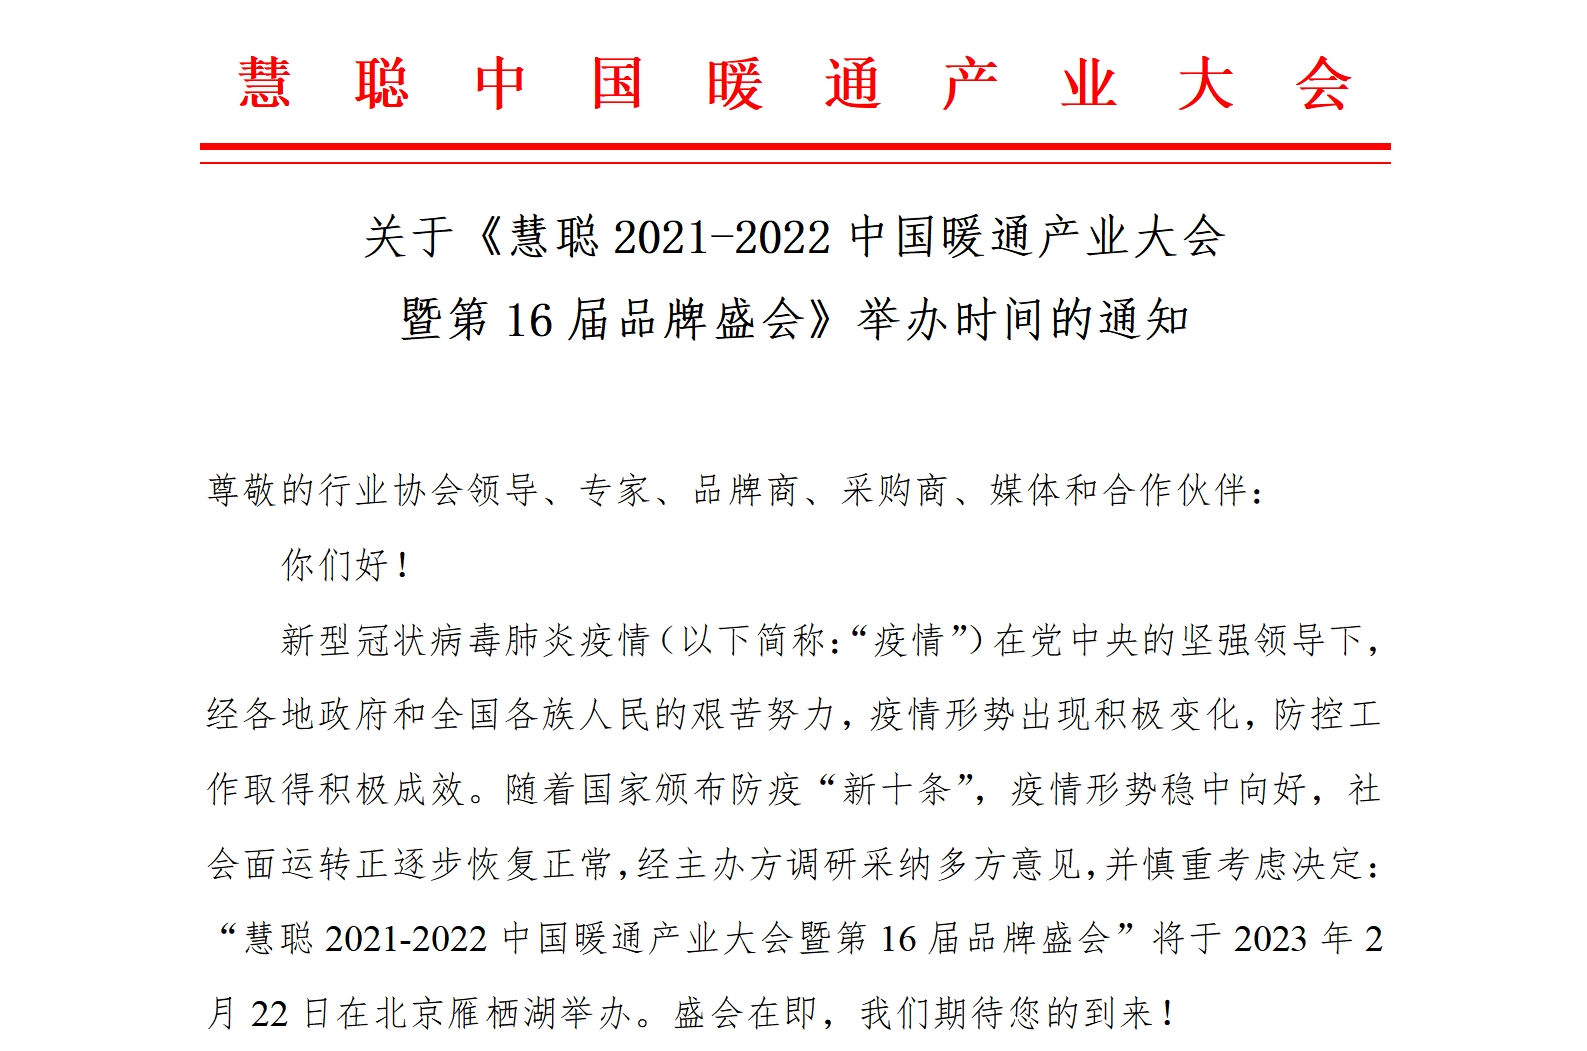 关于《慧聪2021-2022中国暖通产业大会暨第16届品牌盛会》举办时间的通知